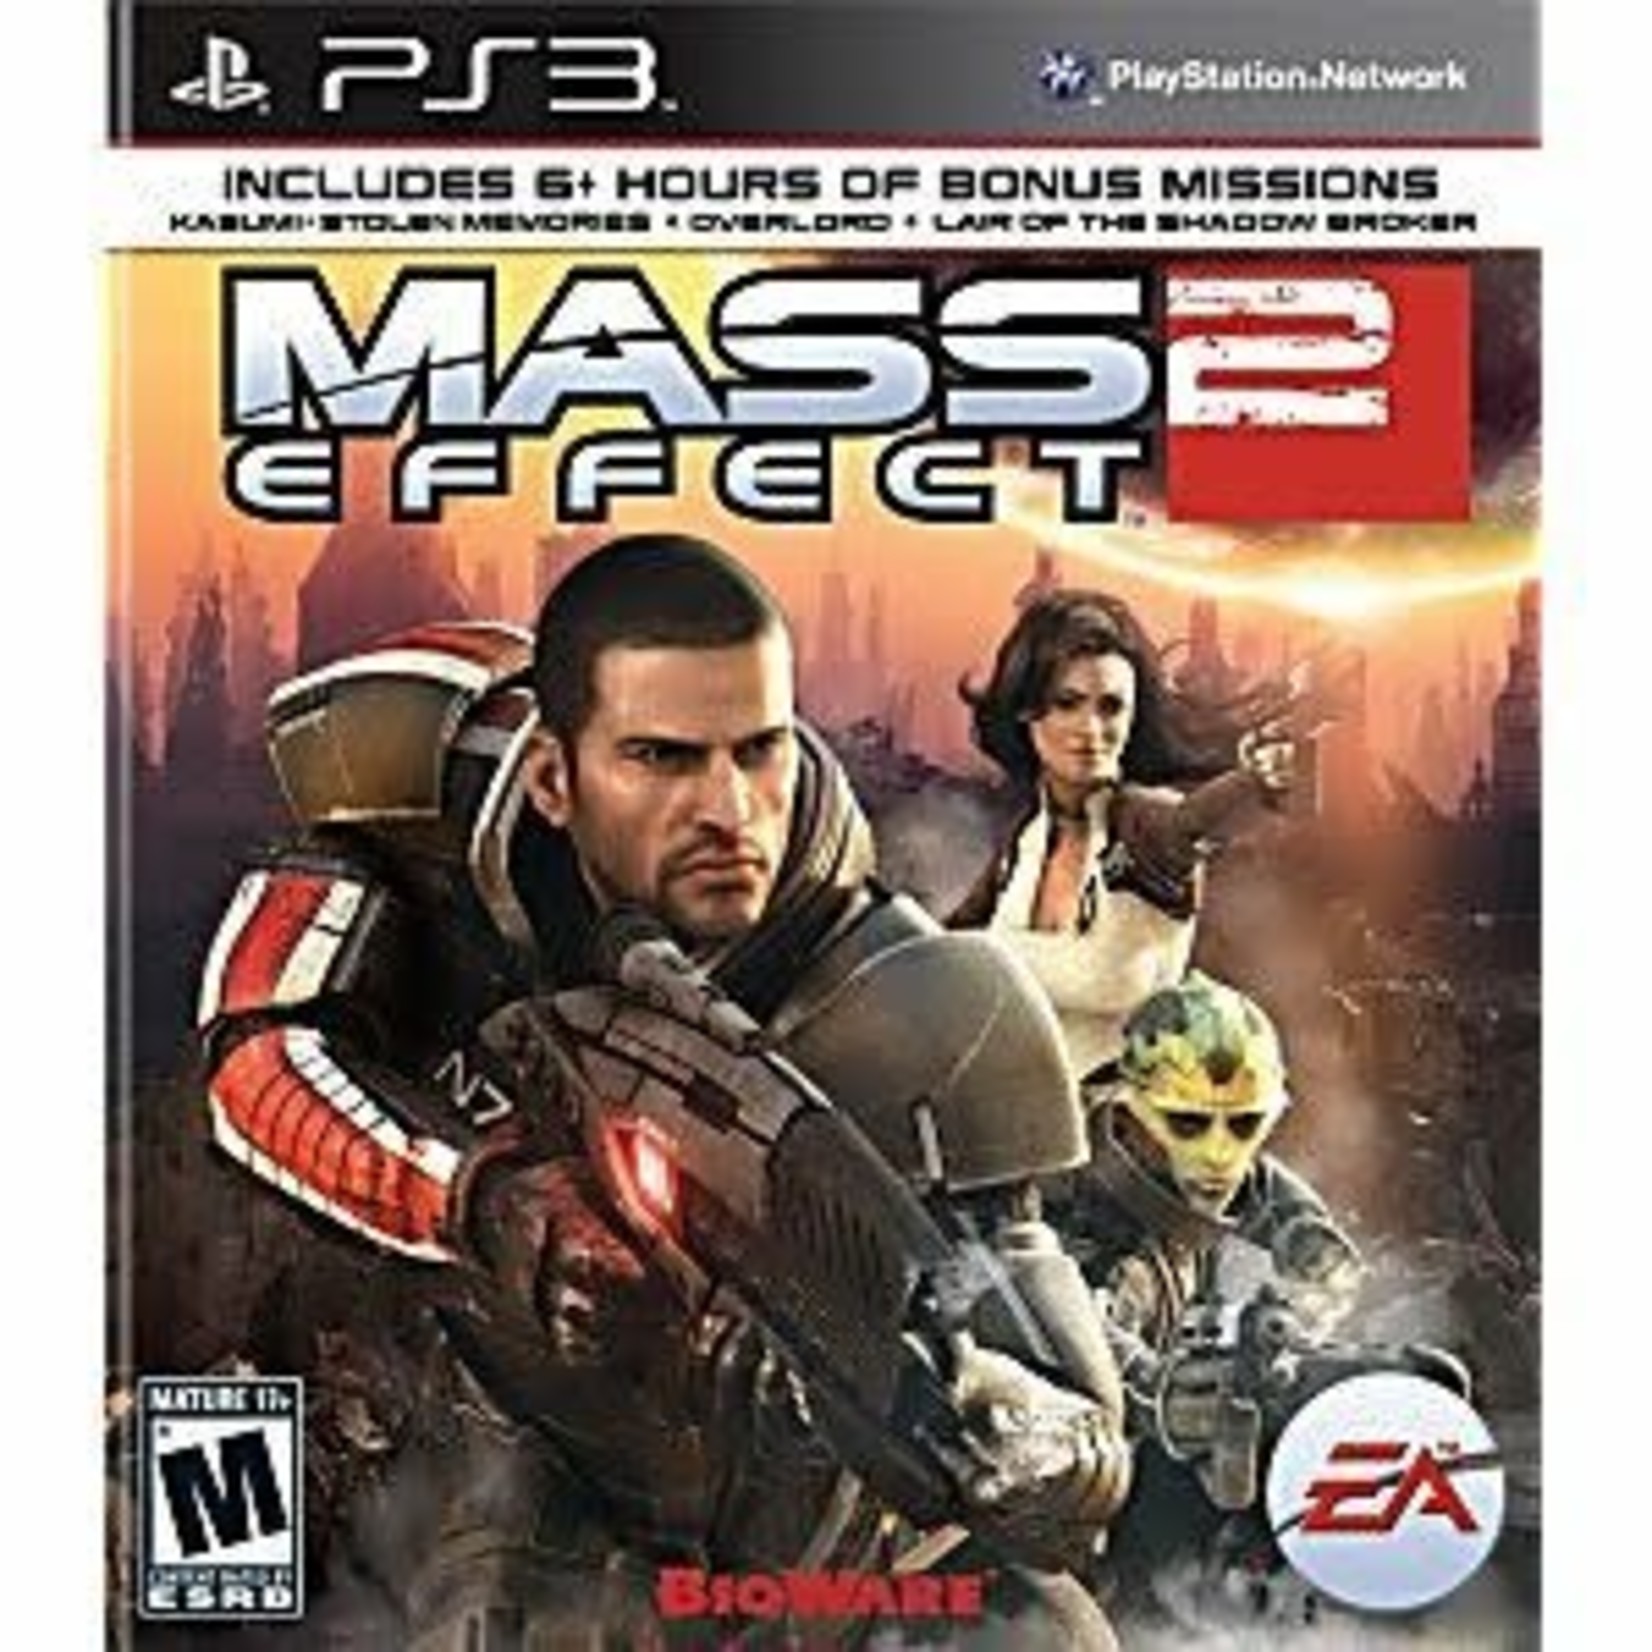 PS3U-MASS EFFECT 2